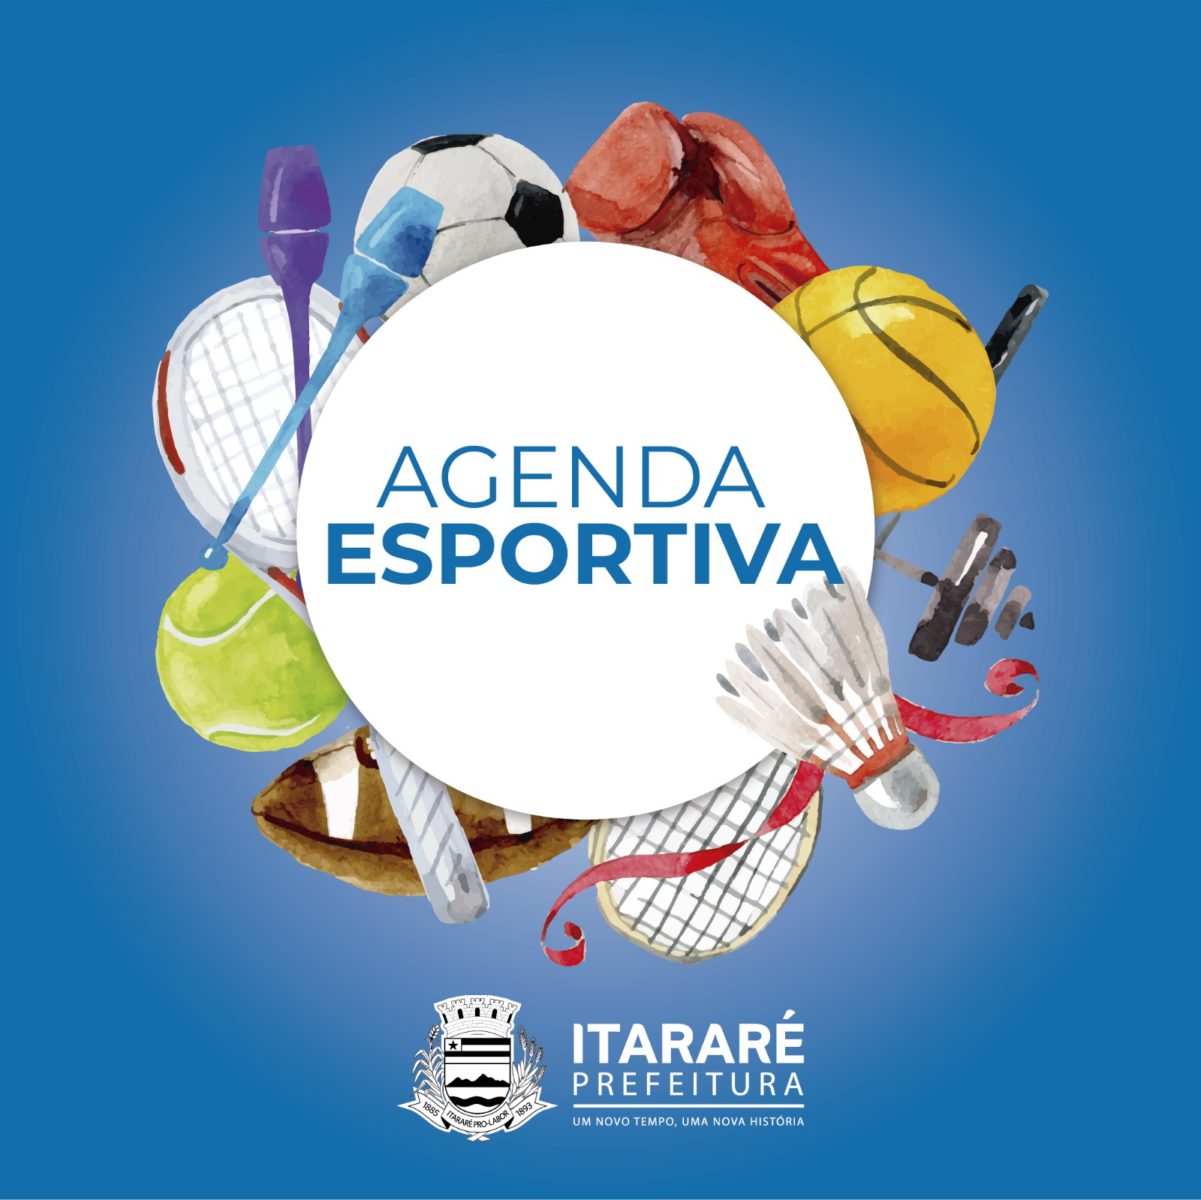 *Agenda Esportiva: Final do Campeonato Rural de Futebol acontece neste domingo (30) em Itararé (SP)*